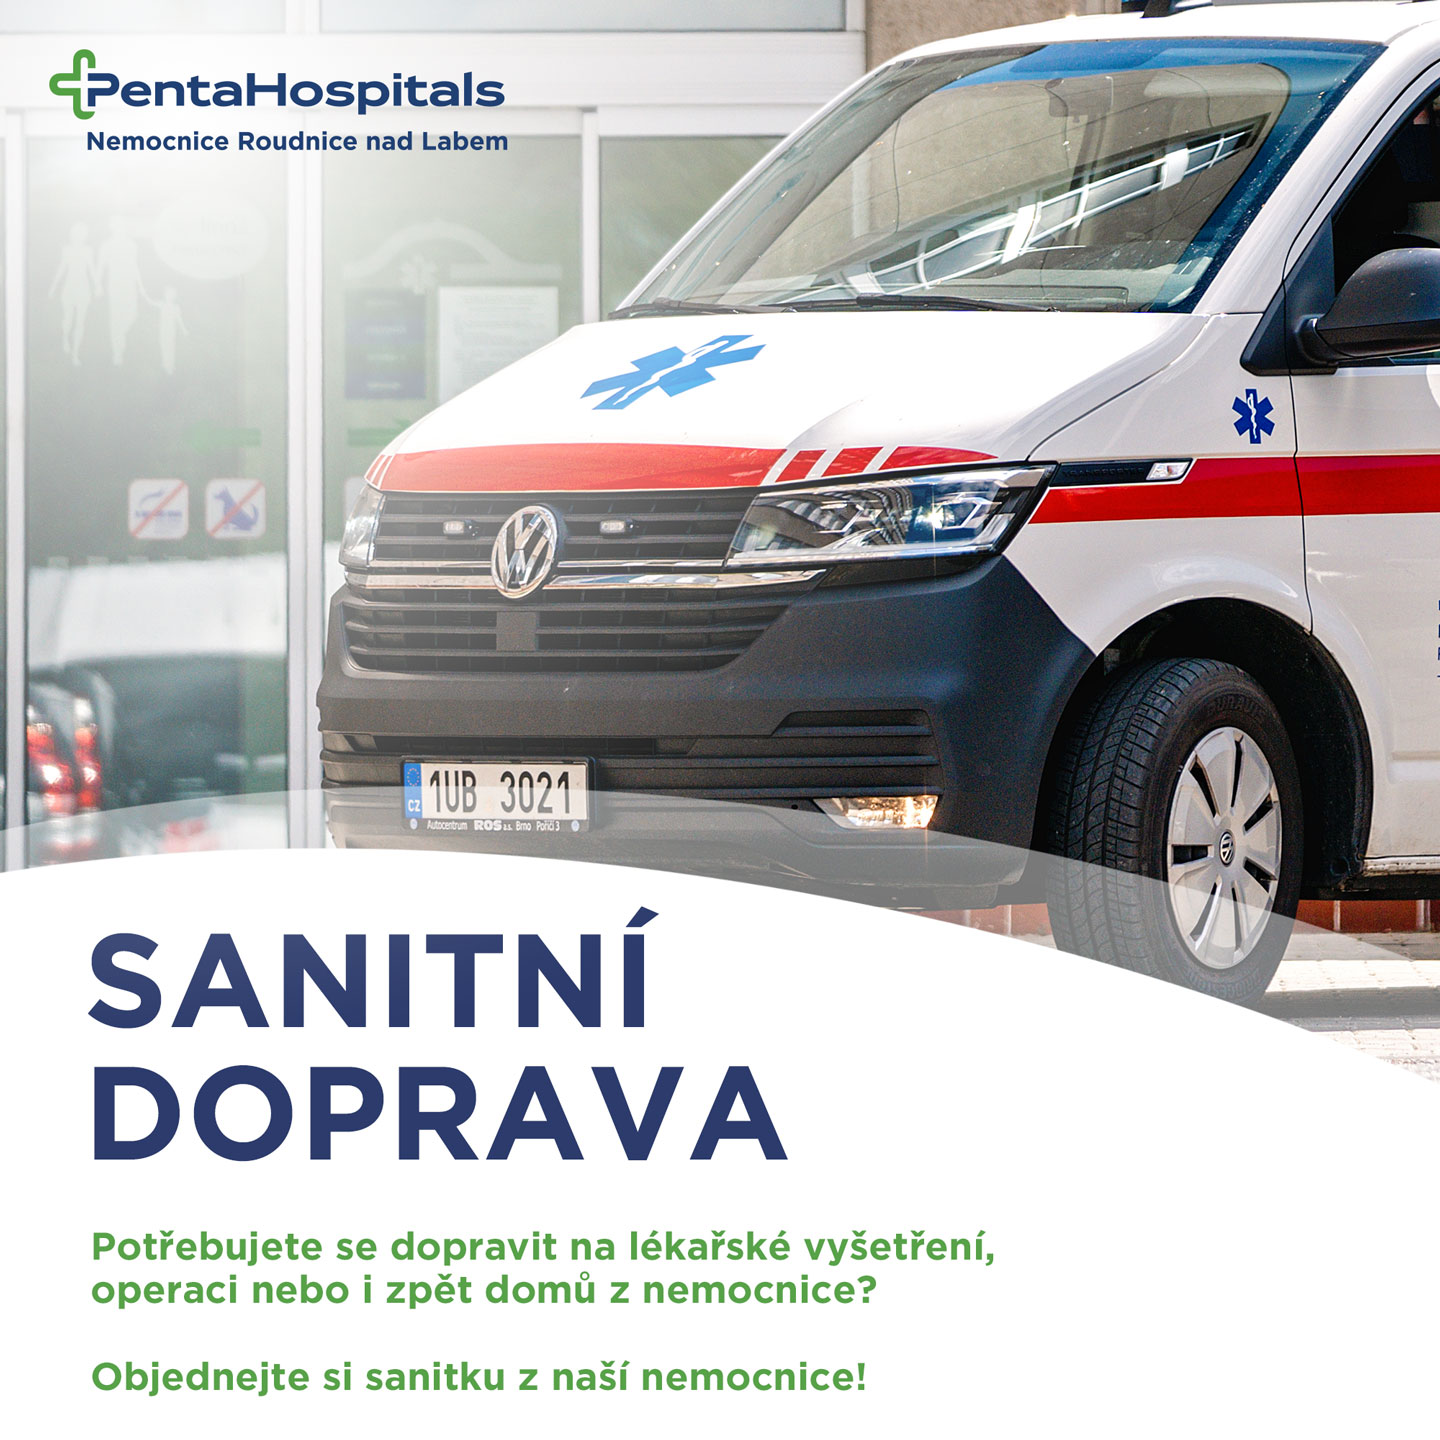 Nemocnice Roudnice nad Labem - aktuality - Objednejte si sanitku z naší nemocnice